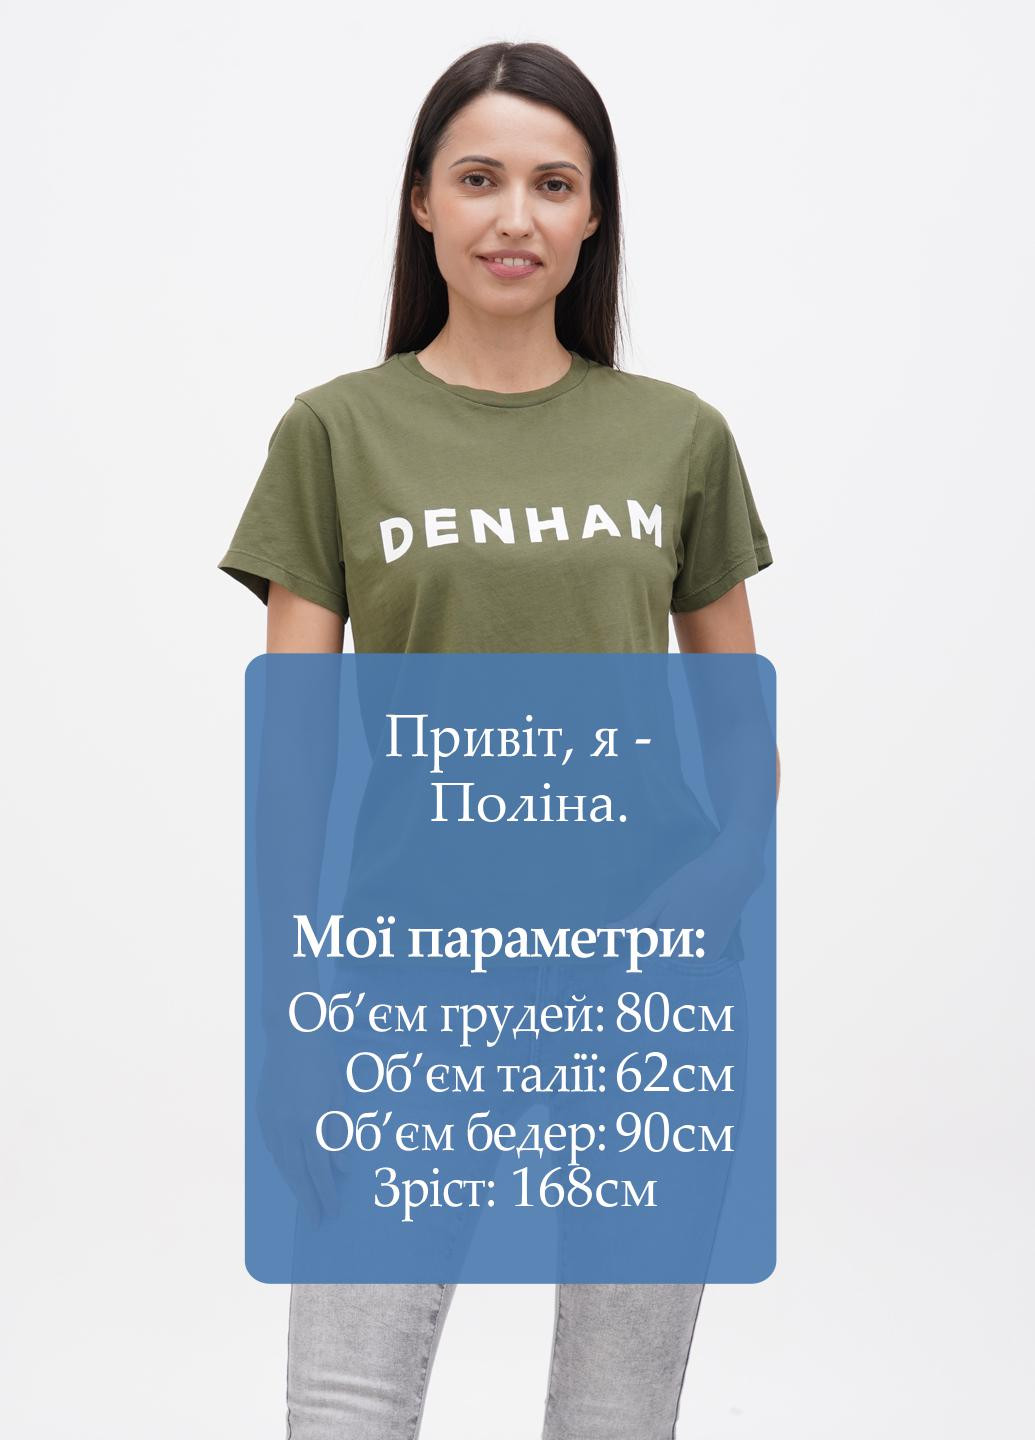 Хаки (оливковая) летняя футболка Denham